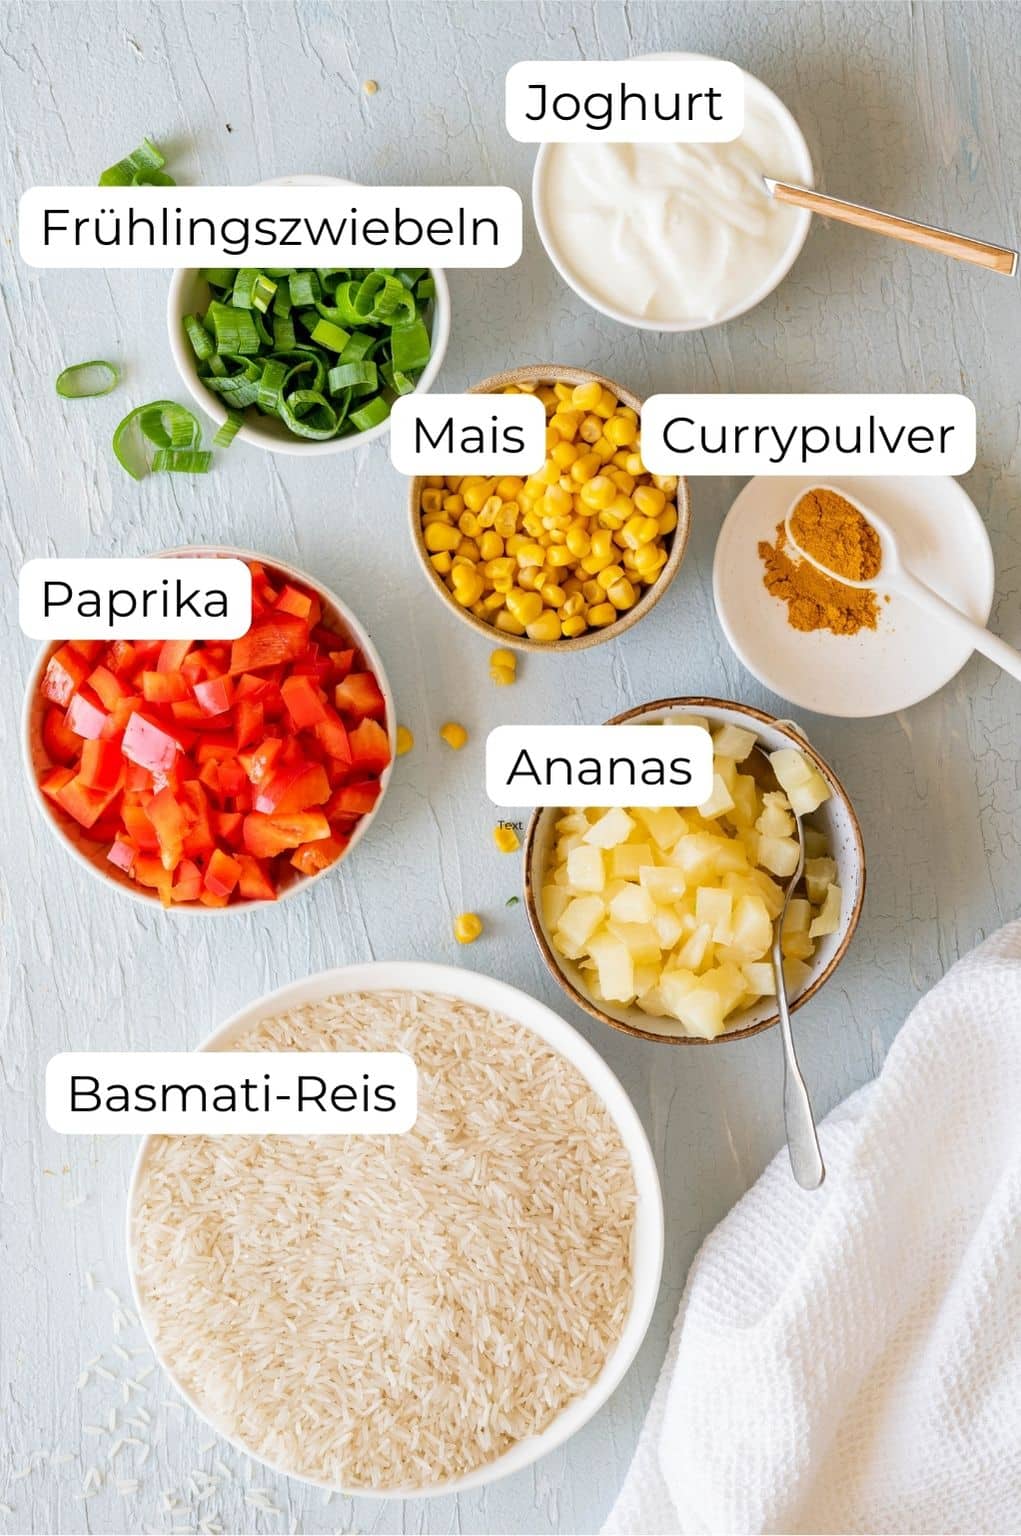 Zutaten für den Reissalat in Schüsselchen: Basmati-Reis, rote Paprika, Ananas, Mais, Frühlingszwiebeln, Joghurt und Currypulver.